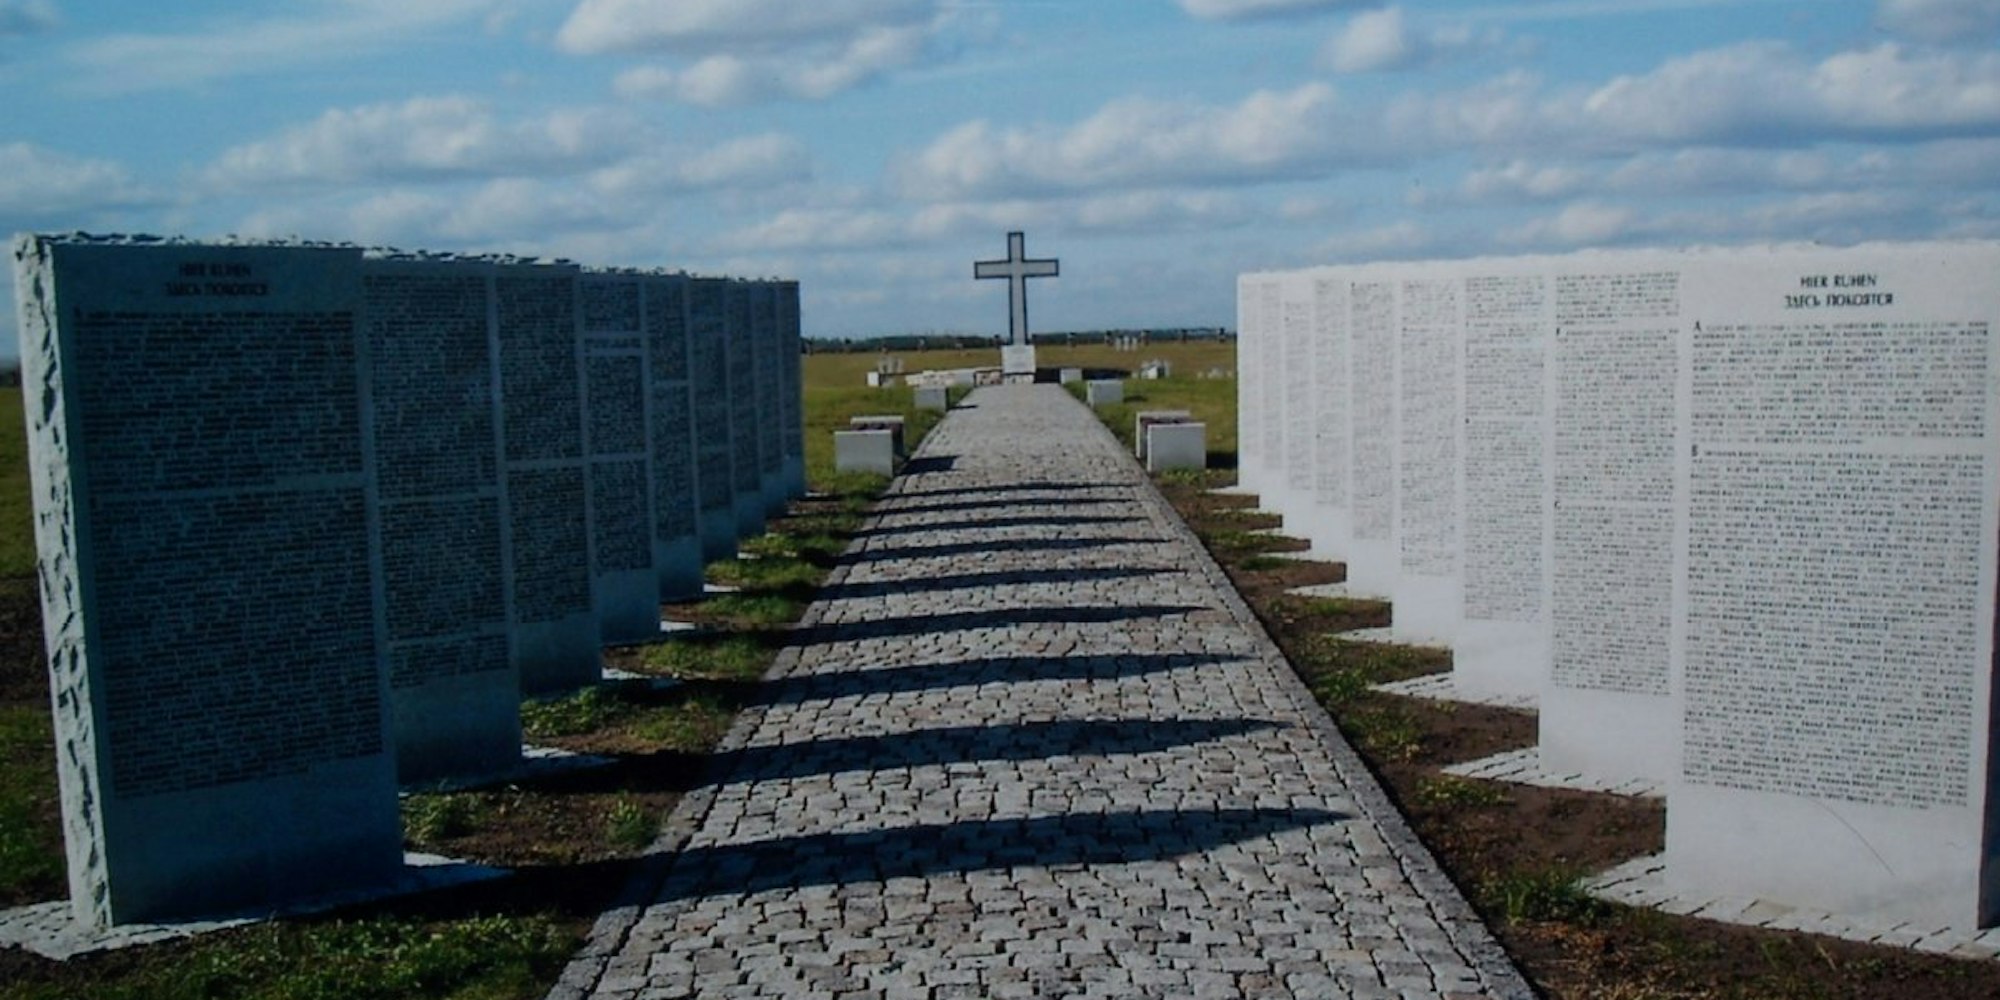 Der Volksbund Deutsche Kriegsgräberfürsorge pflegt weltweit 843 Gedenkstätten für gefallene Deutsche, wie diese im russischen Kursk-Besedino. Auf den Stelen sind viele Namen aufgelistet.